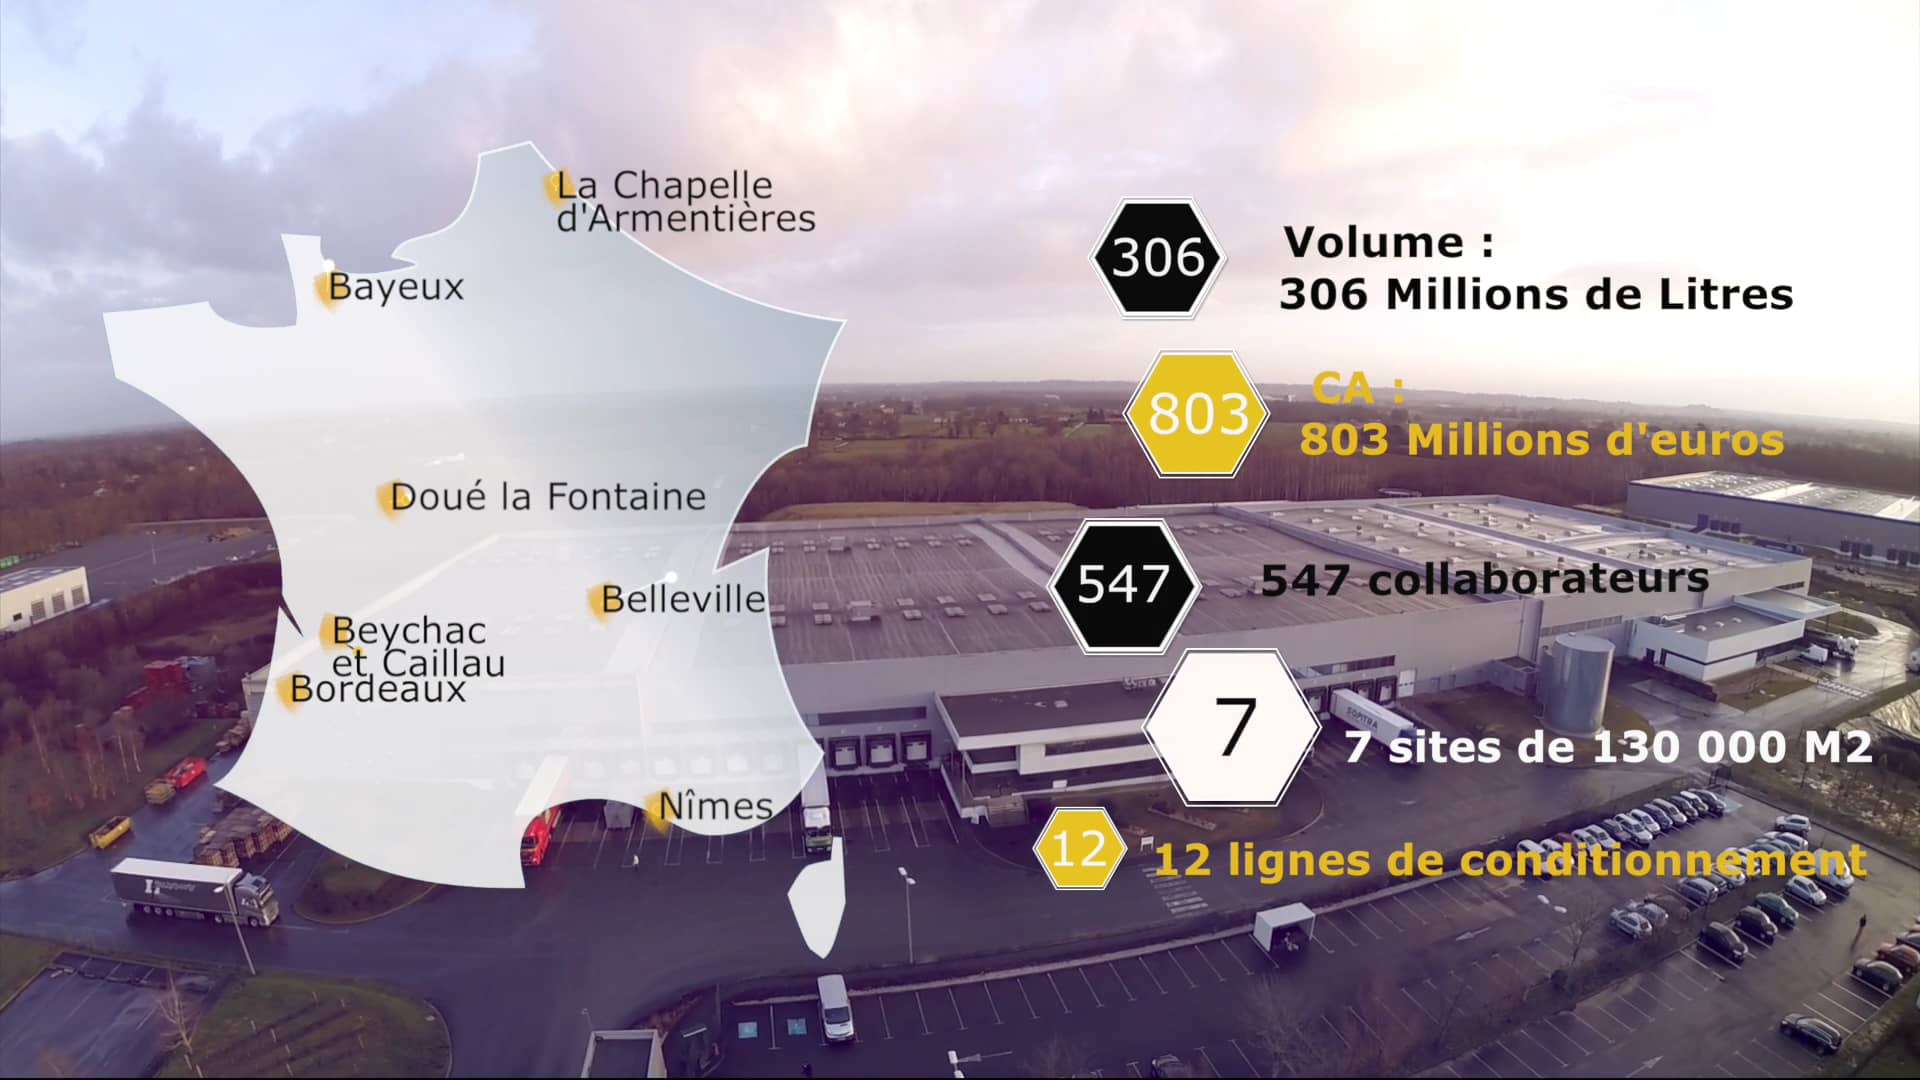 Maison Johanès Boubée, filiale Carrefour on Vimeo